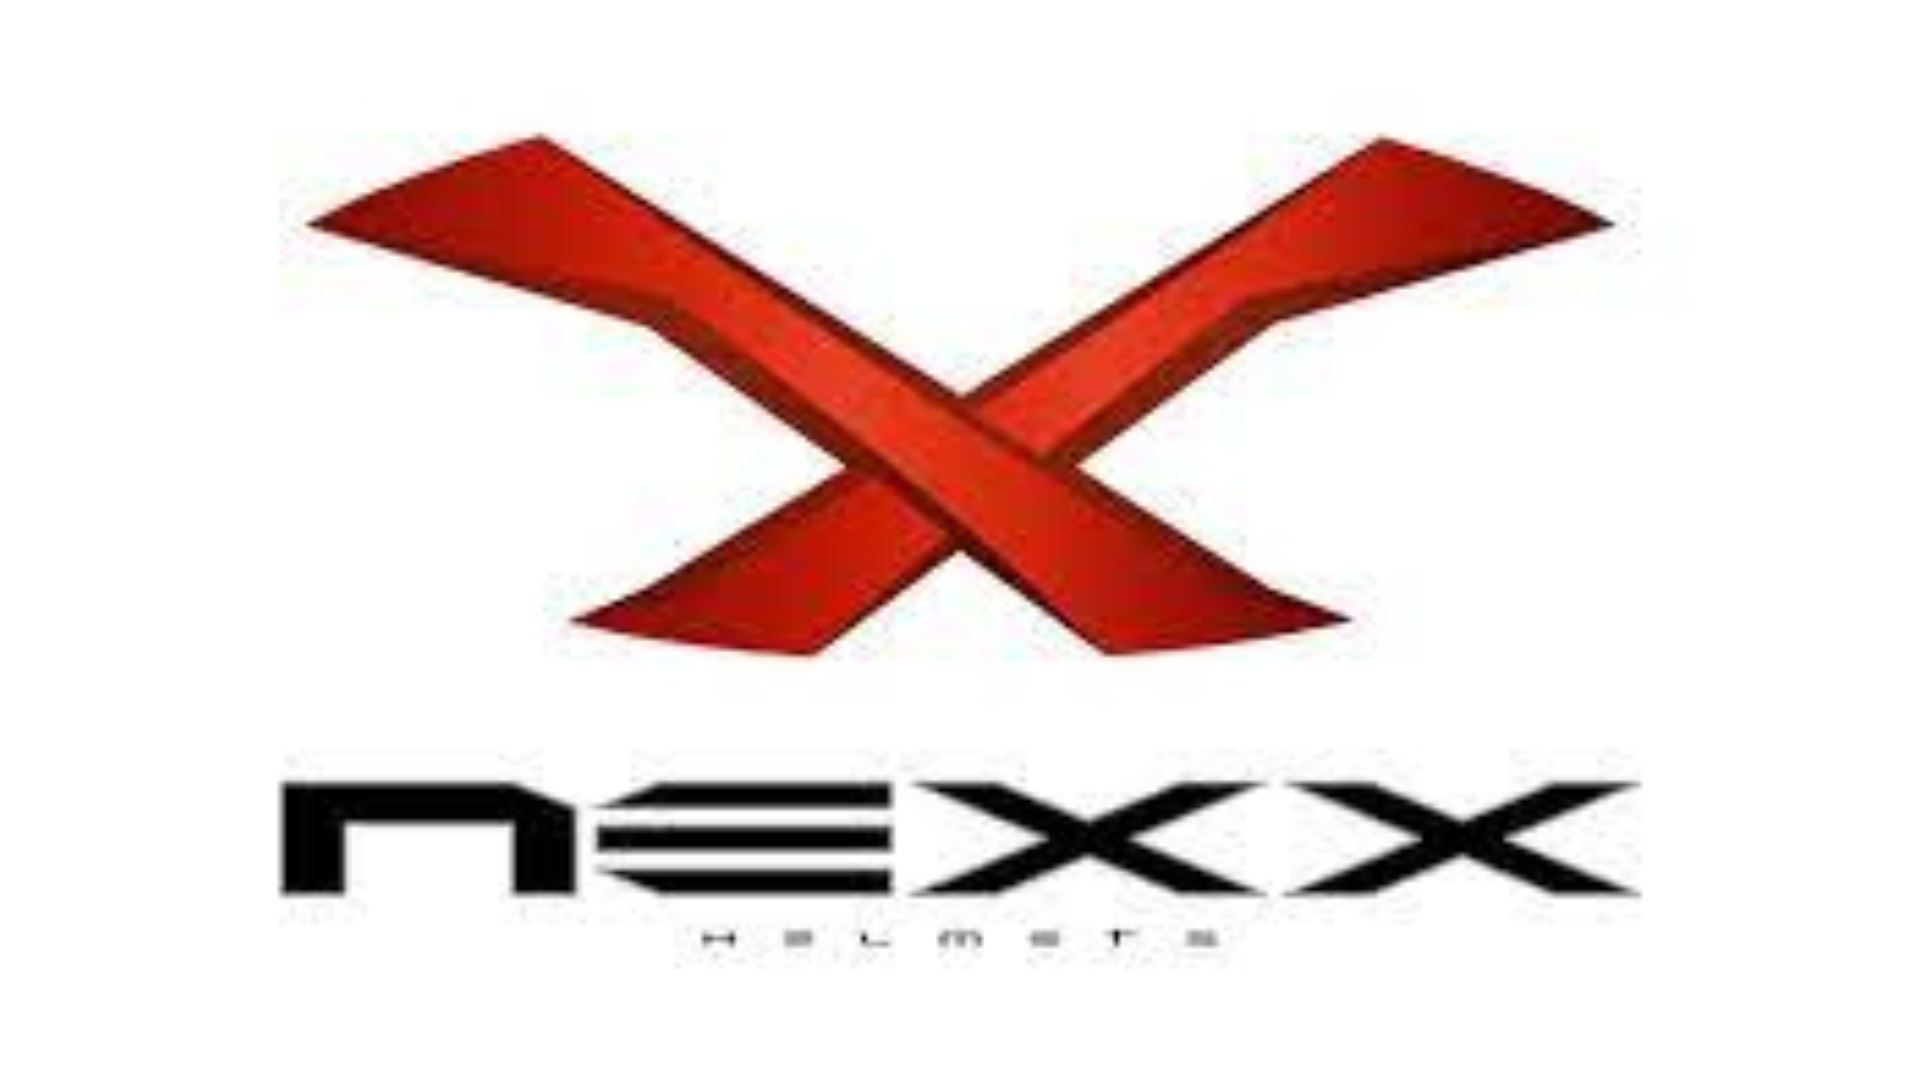 Nexx